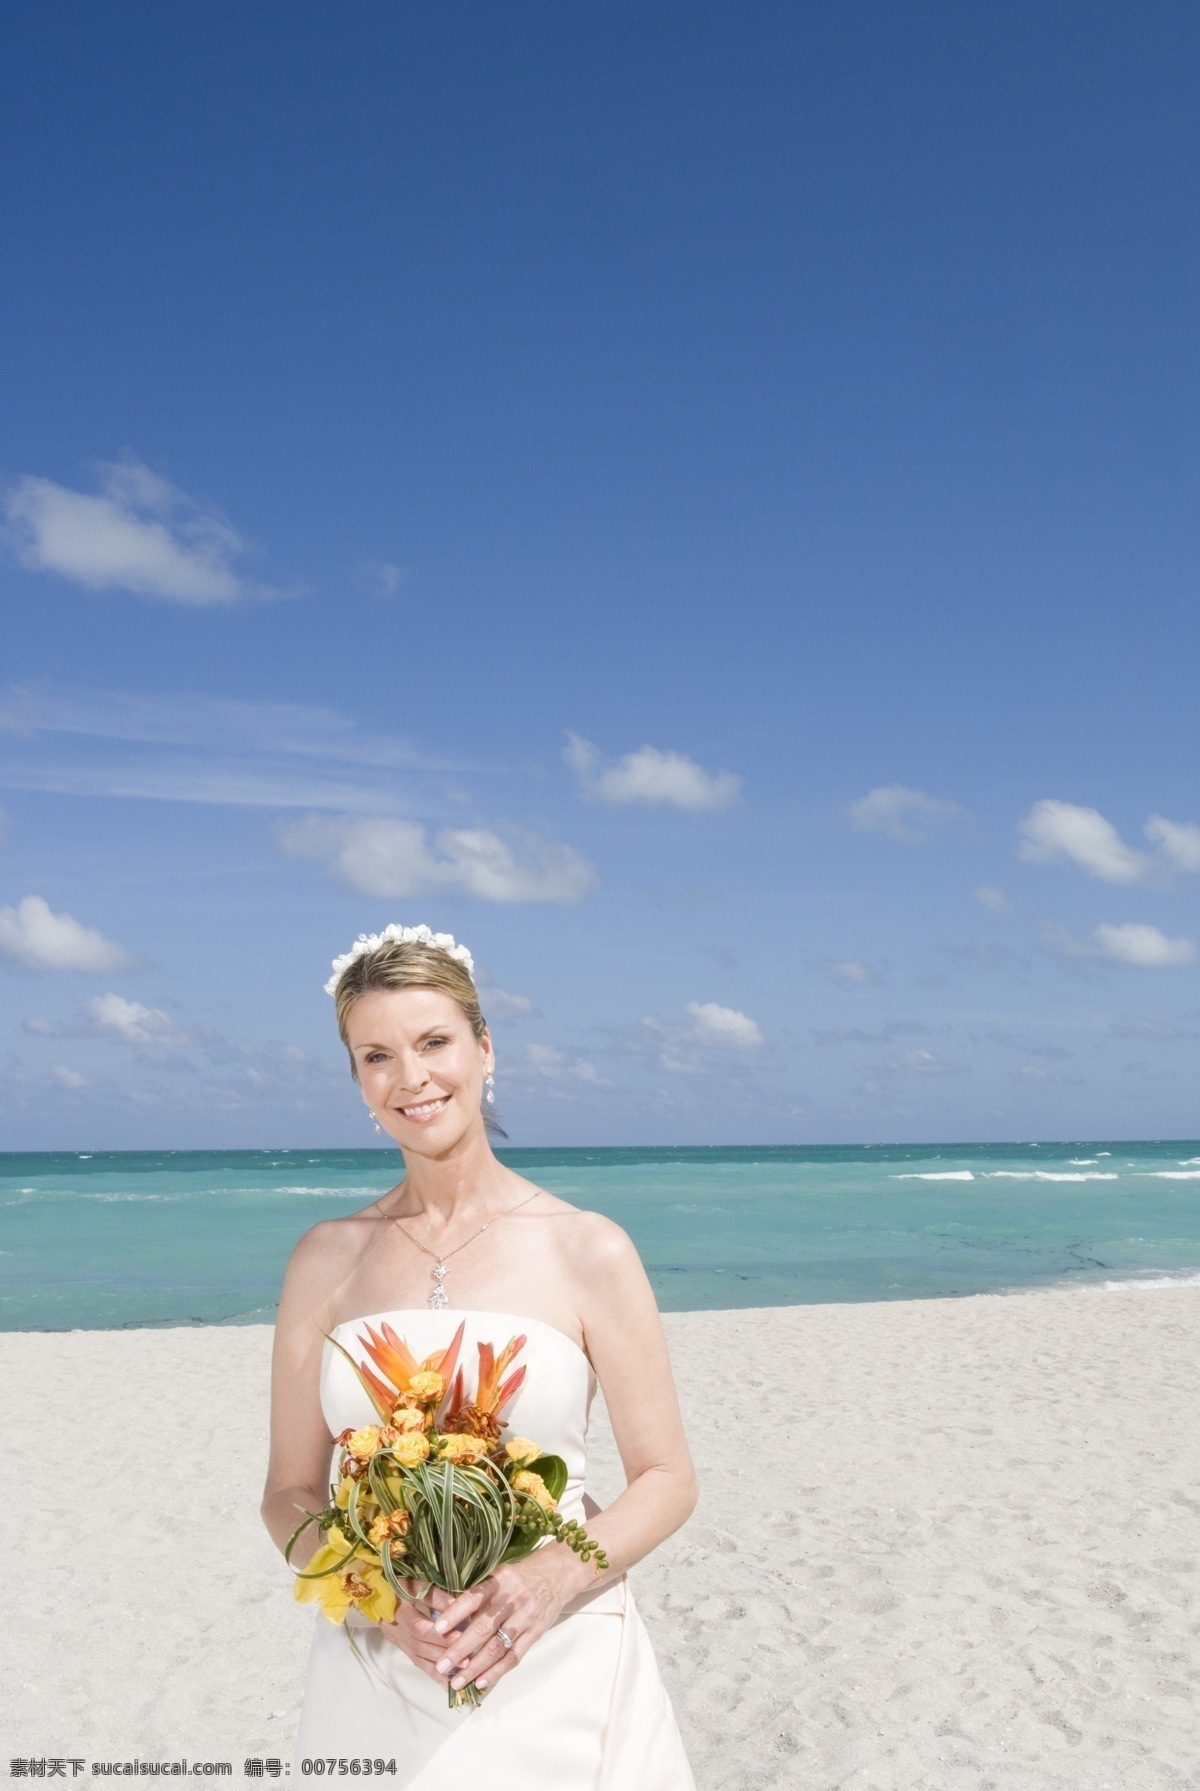 沙滩 上 捧 花 新娘 捧花 花朵沙滩 沙滩婚礼 美女 生活人物 情侣图片 人物图片